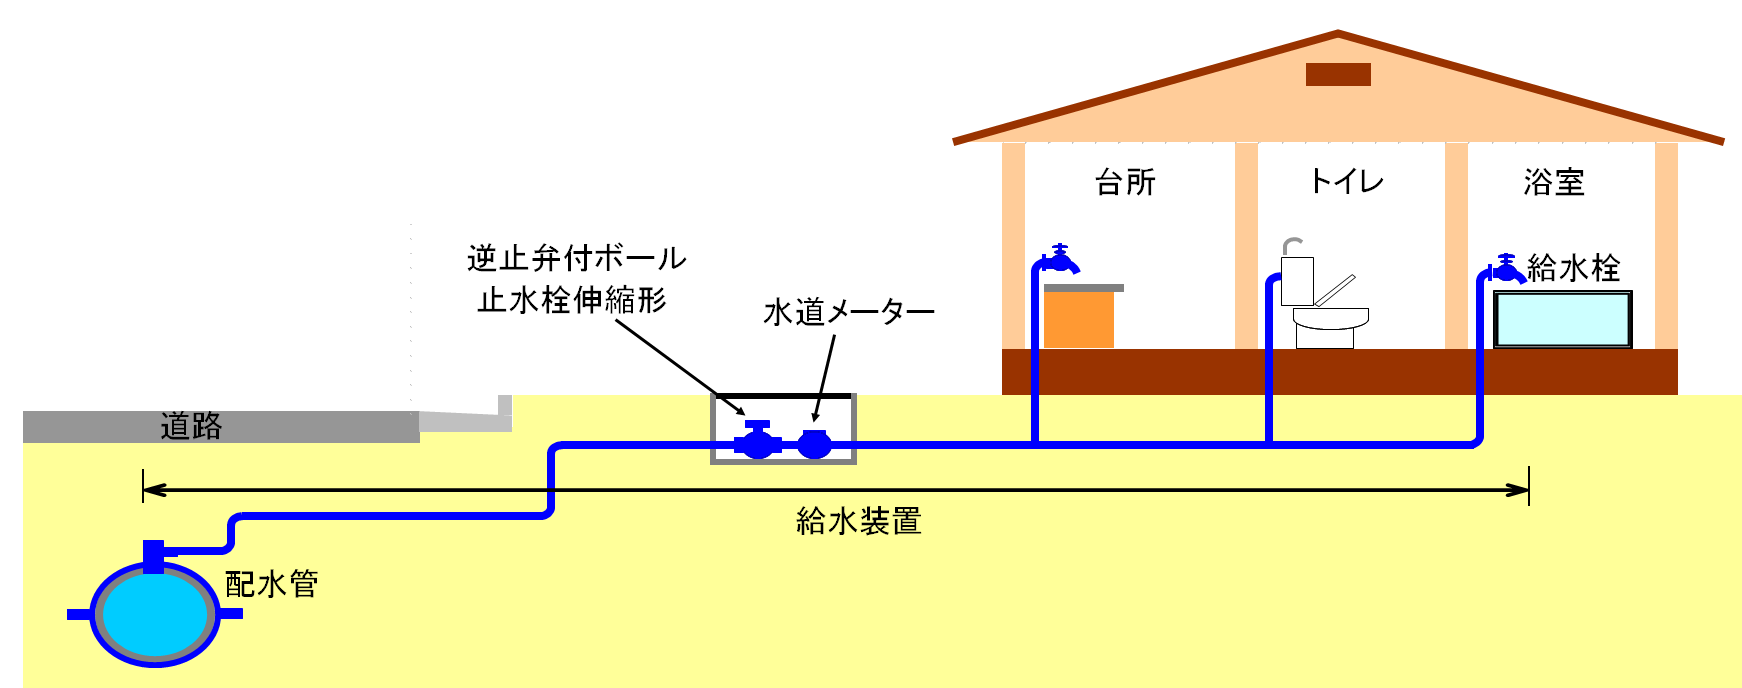 京都市上下水道局 建築確認申請に係る水道法第16条の協議について